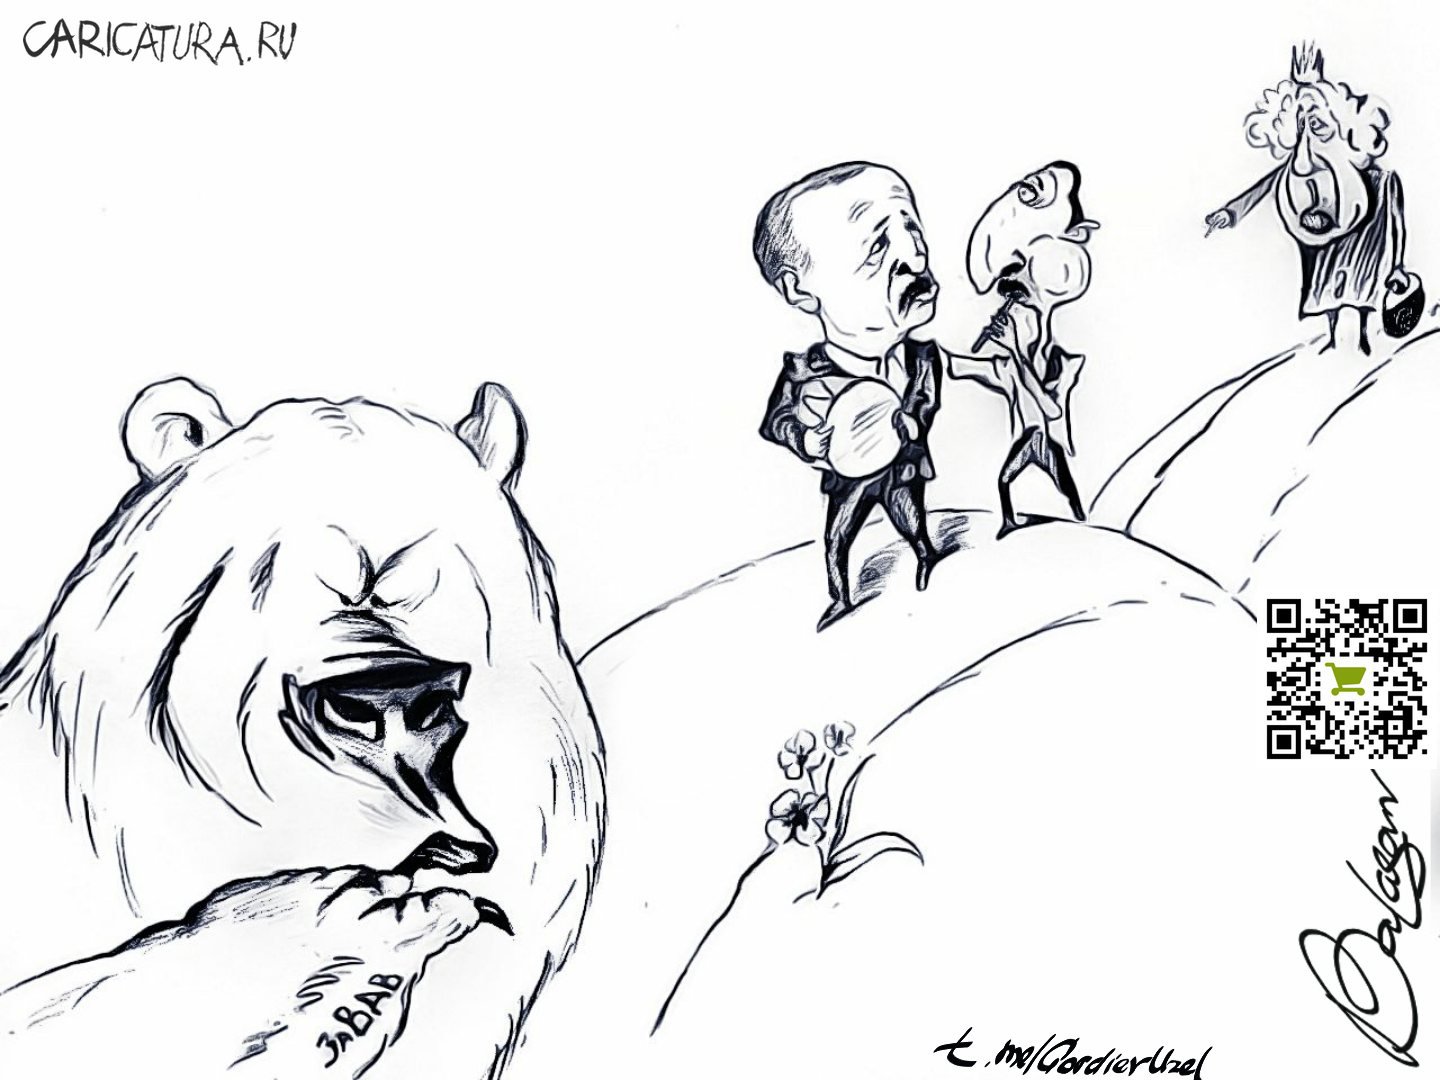 Карикатура "За ВДВ", Александр Баласанов